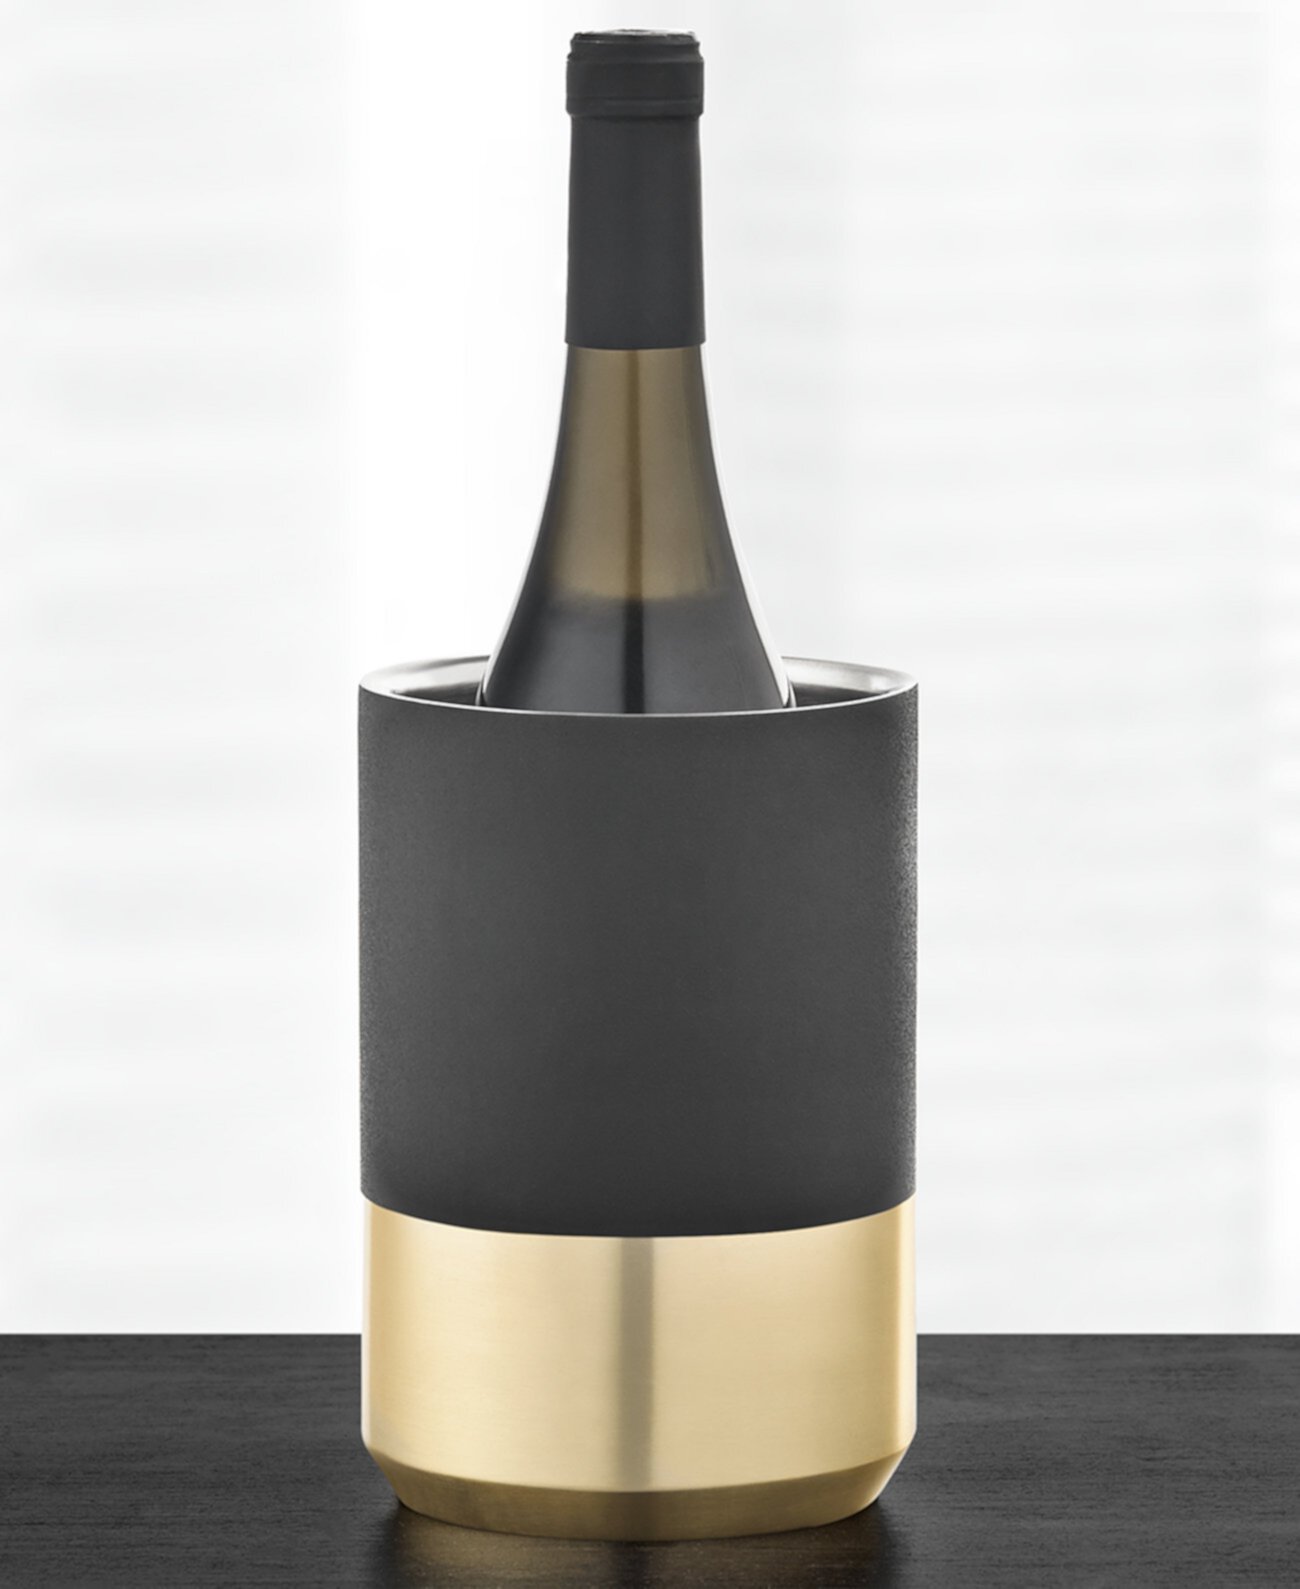 Чиллер для черного и золотого вина, созданный для Macy's Hotel Collection